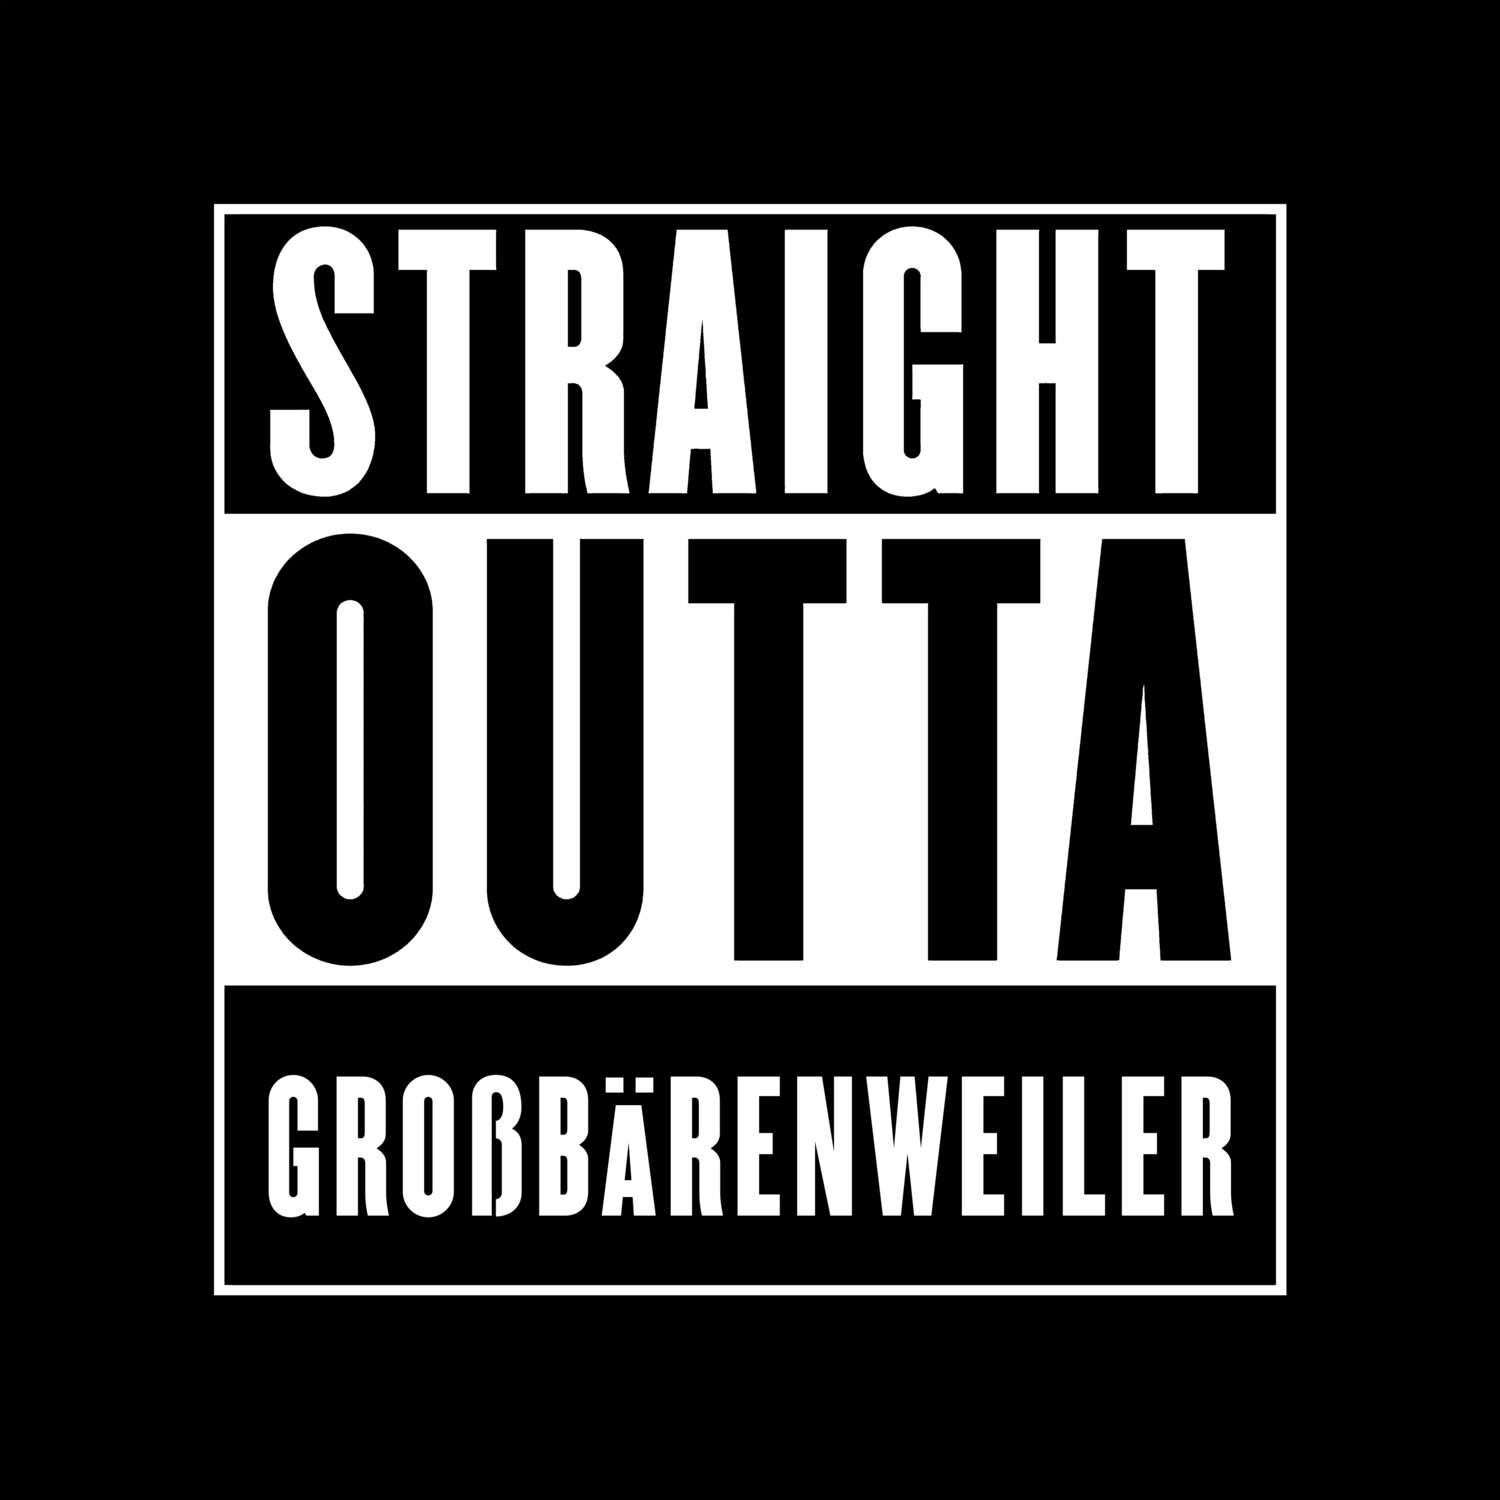 Großbärenweiler T-Shirt »Straight Outta«